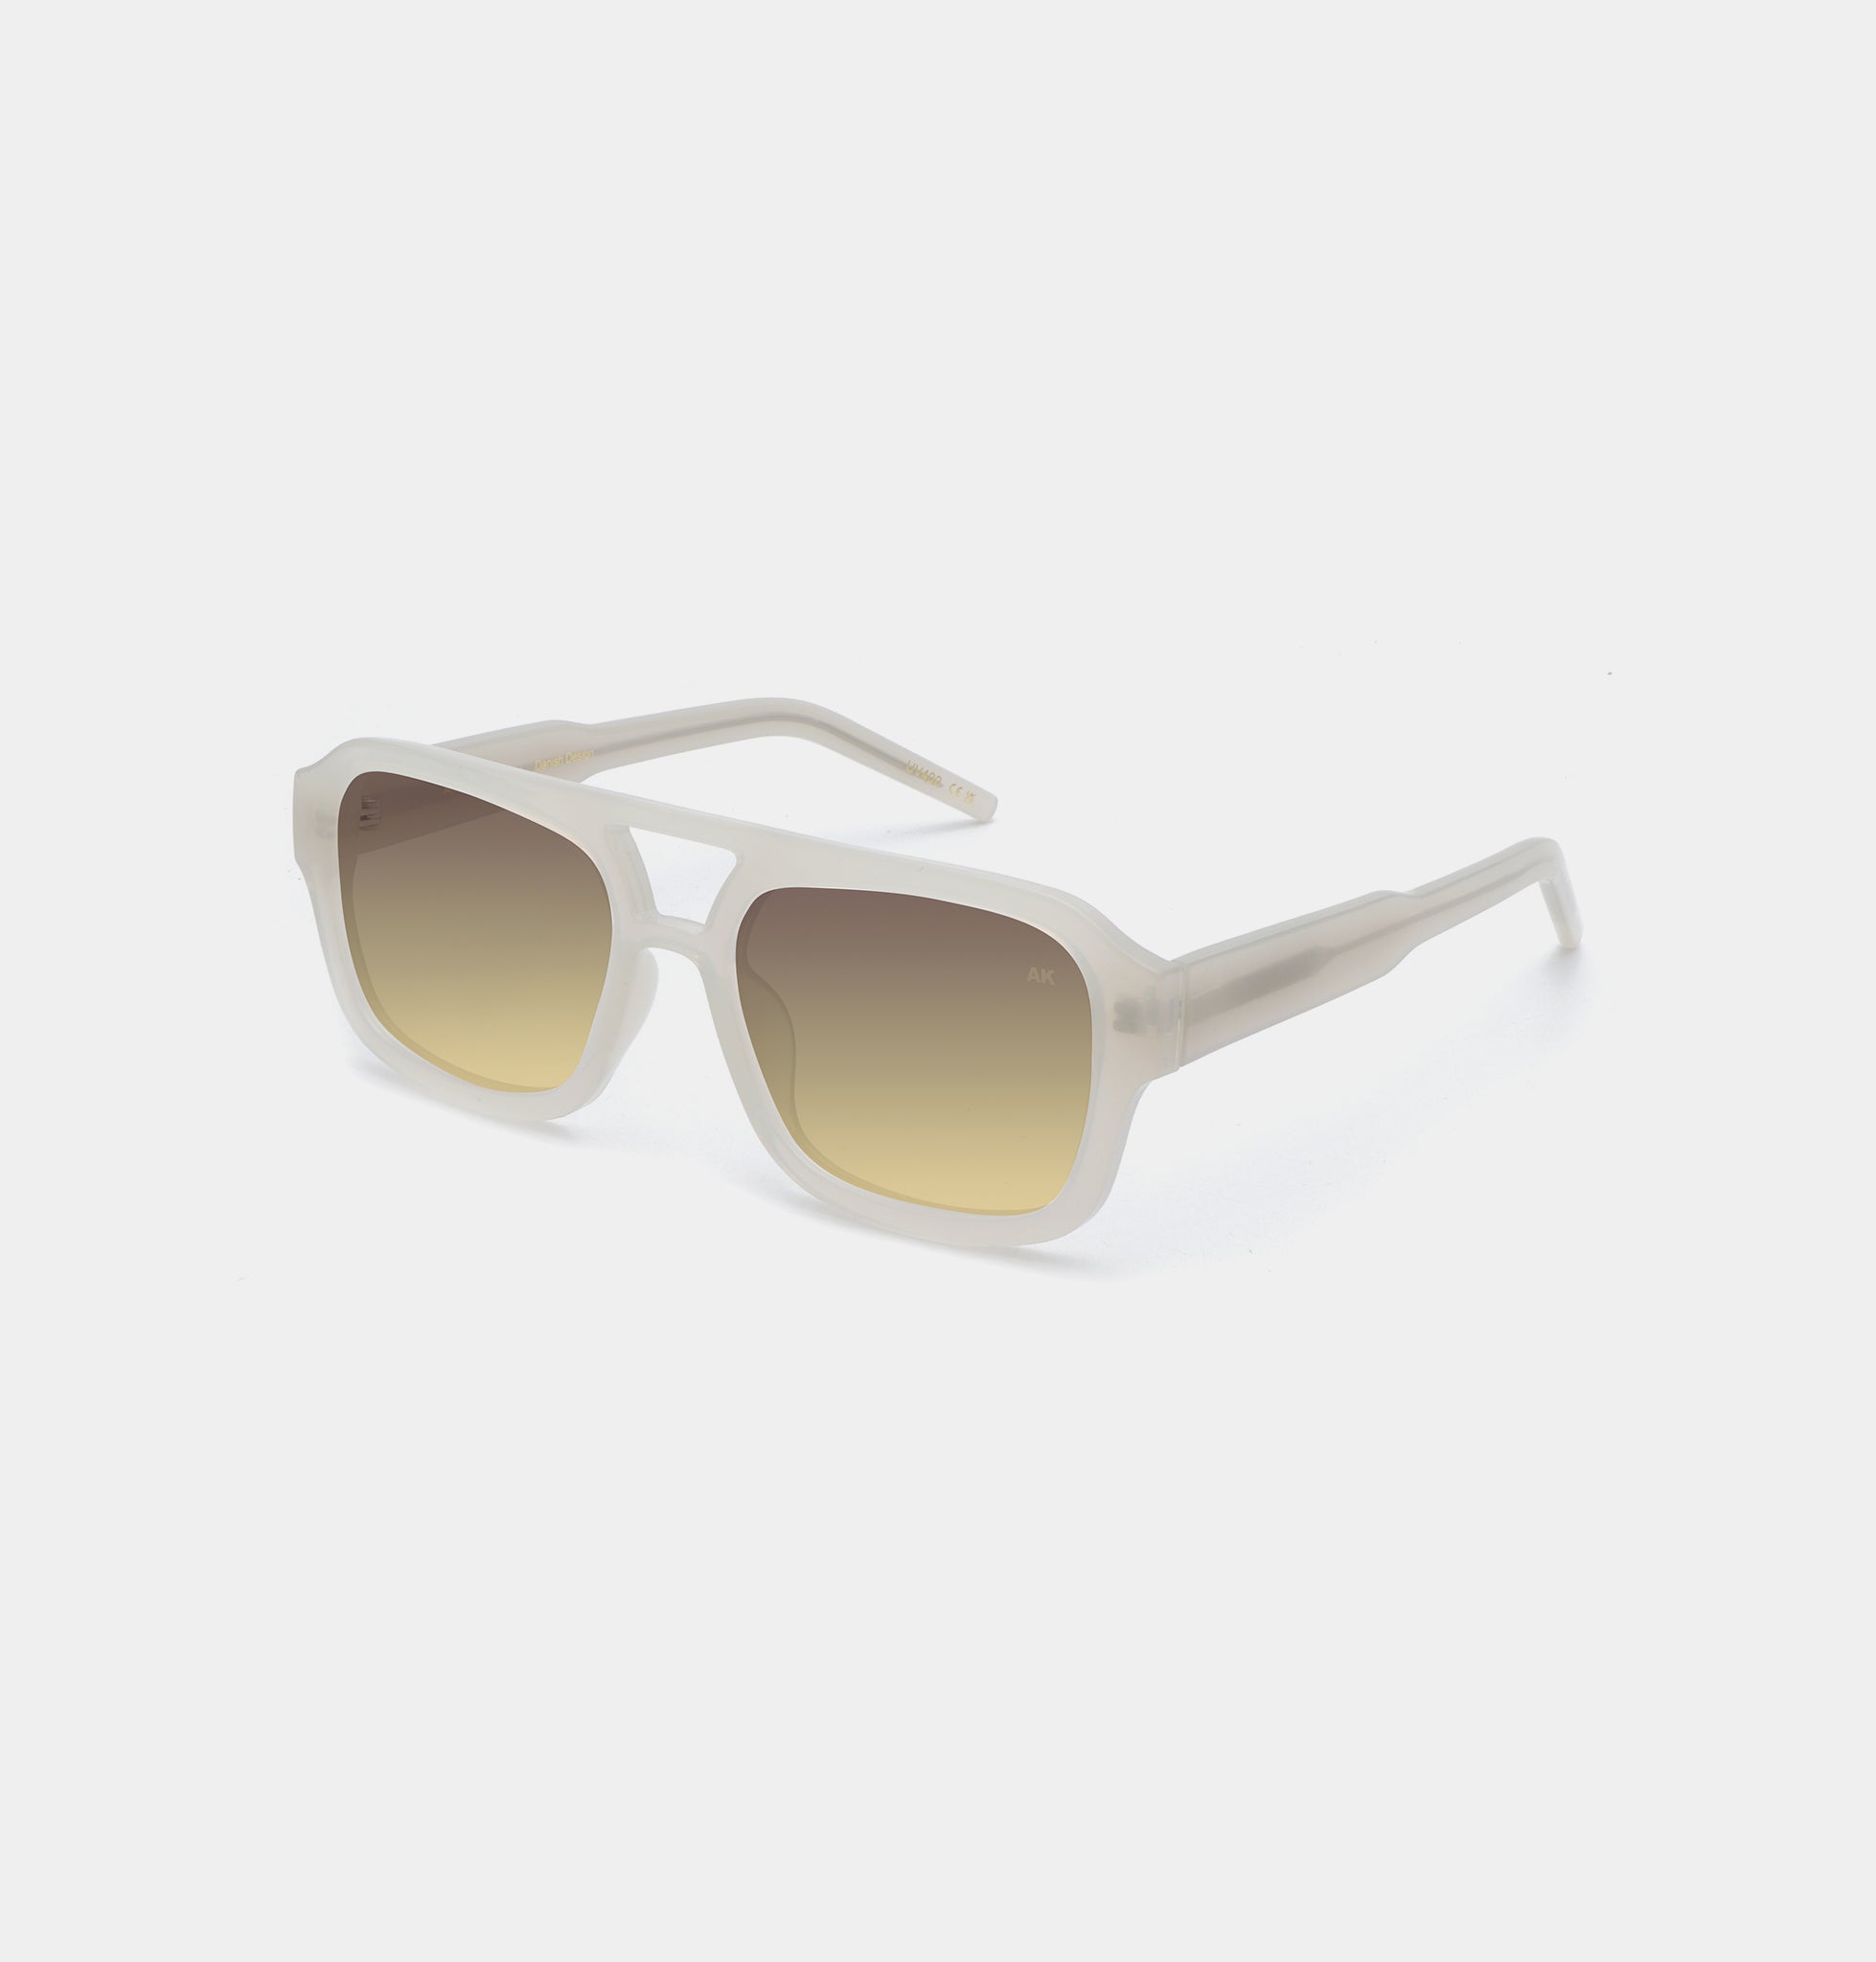 Kaya sunglasses in cream bone